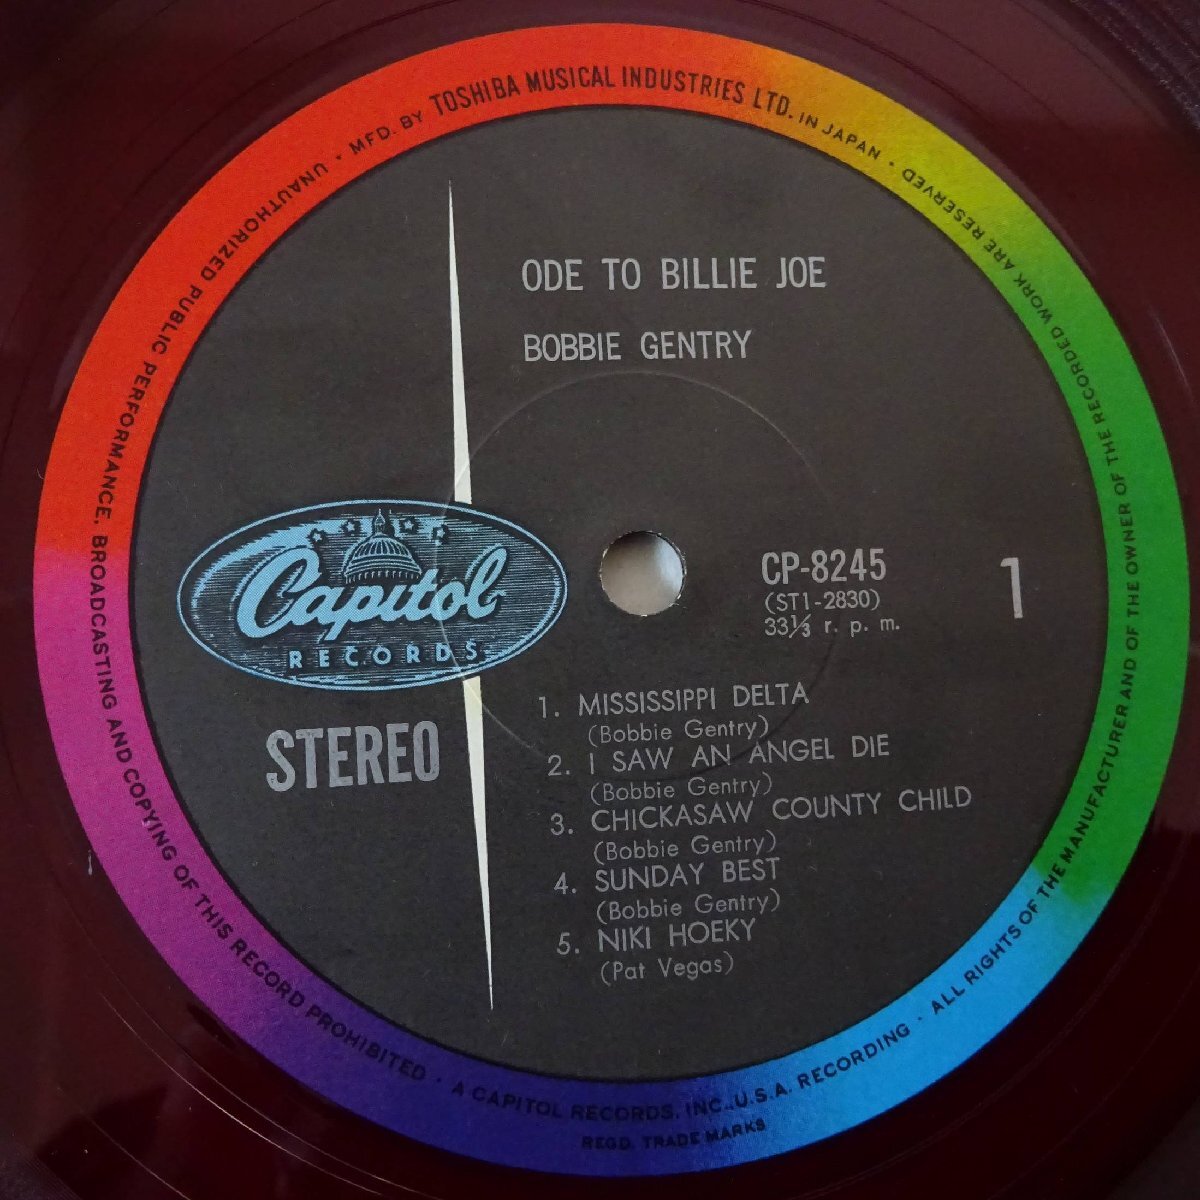 11184049;【国内盤/赤盤/ペラジャケ】Bobbie Gentry / Ode To Billie Joe 話題の新星 ボビー・ジェントリー登場_画像3